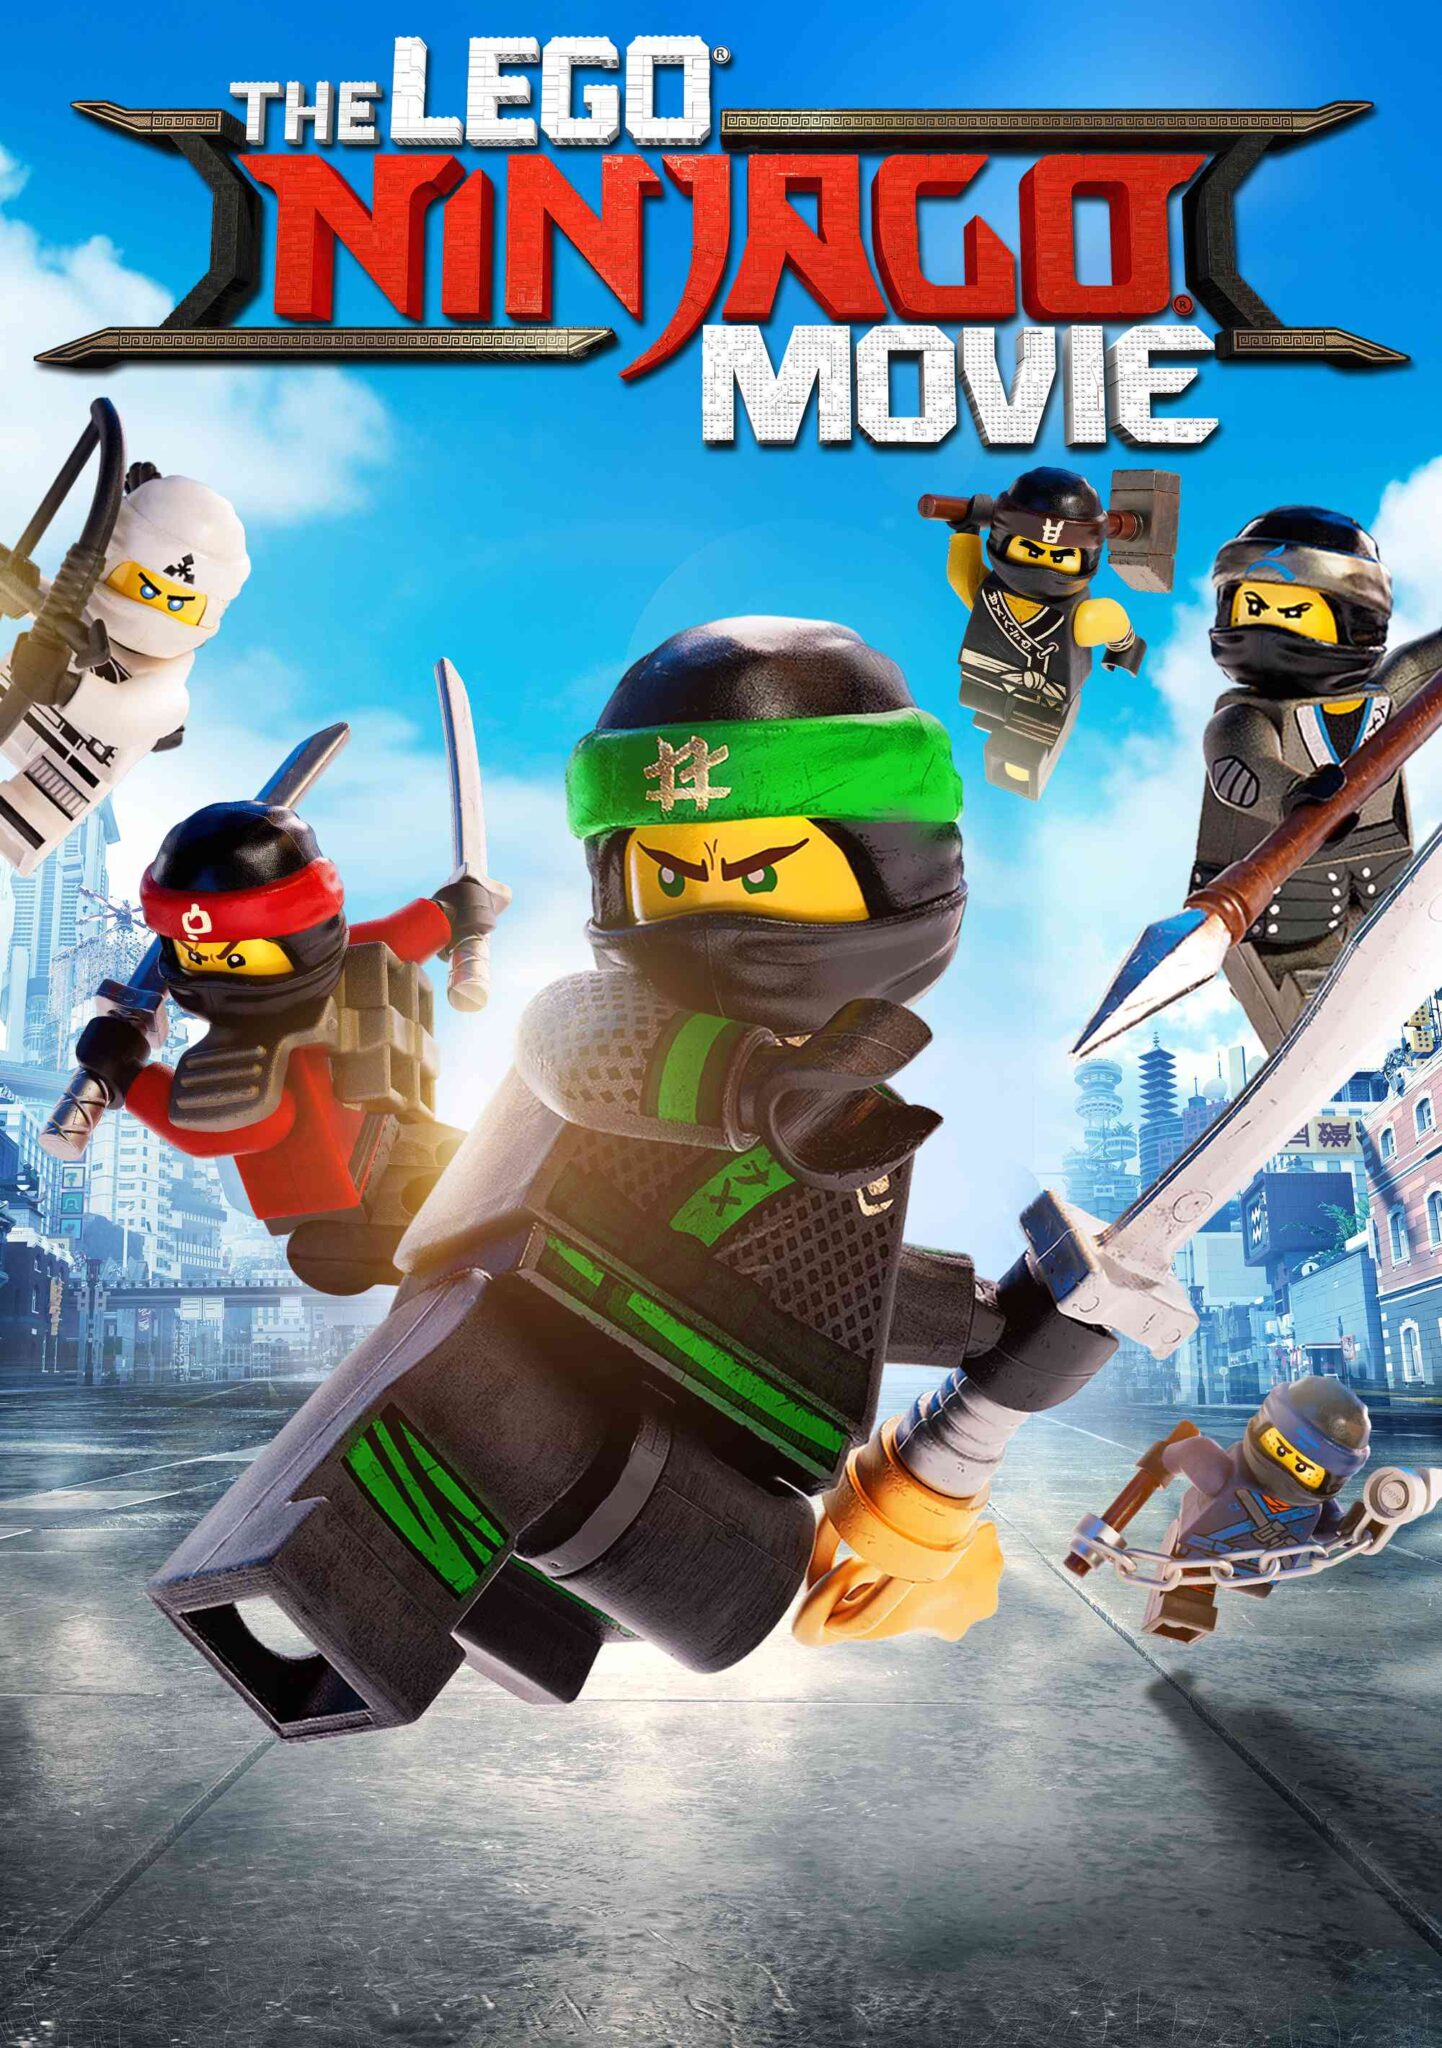 FULL MOVIE: The LEGO Ninjago Movie (2017)